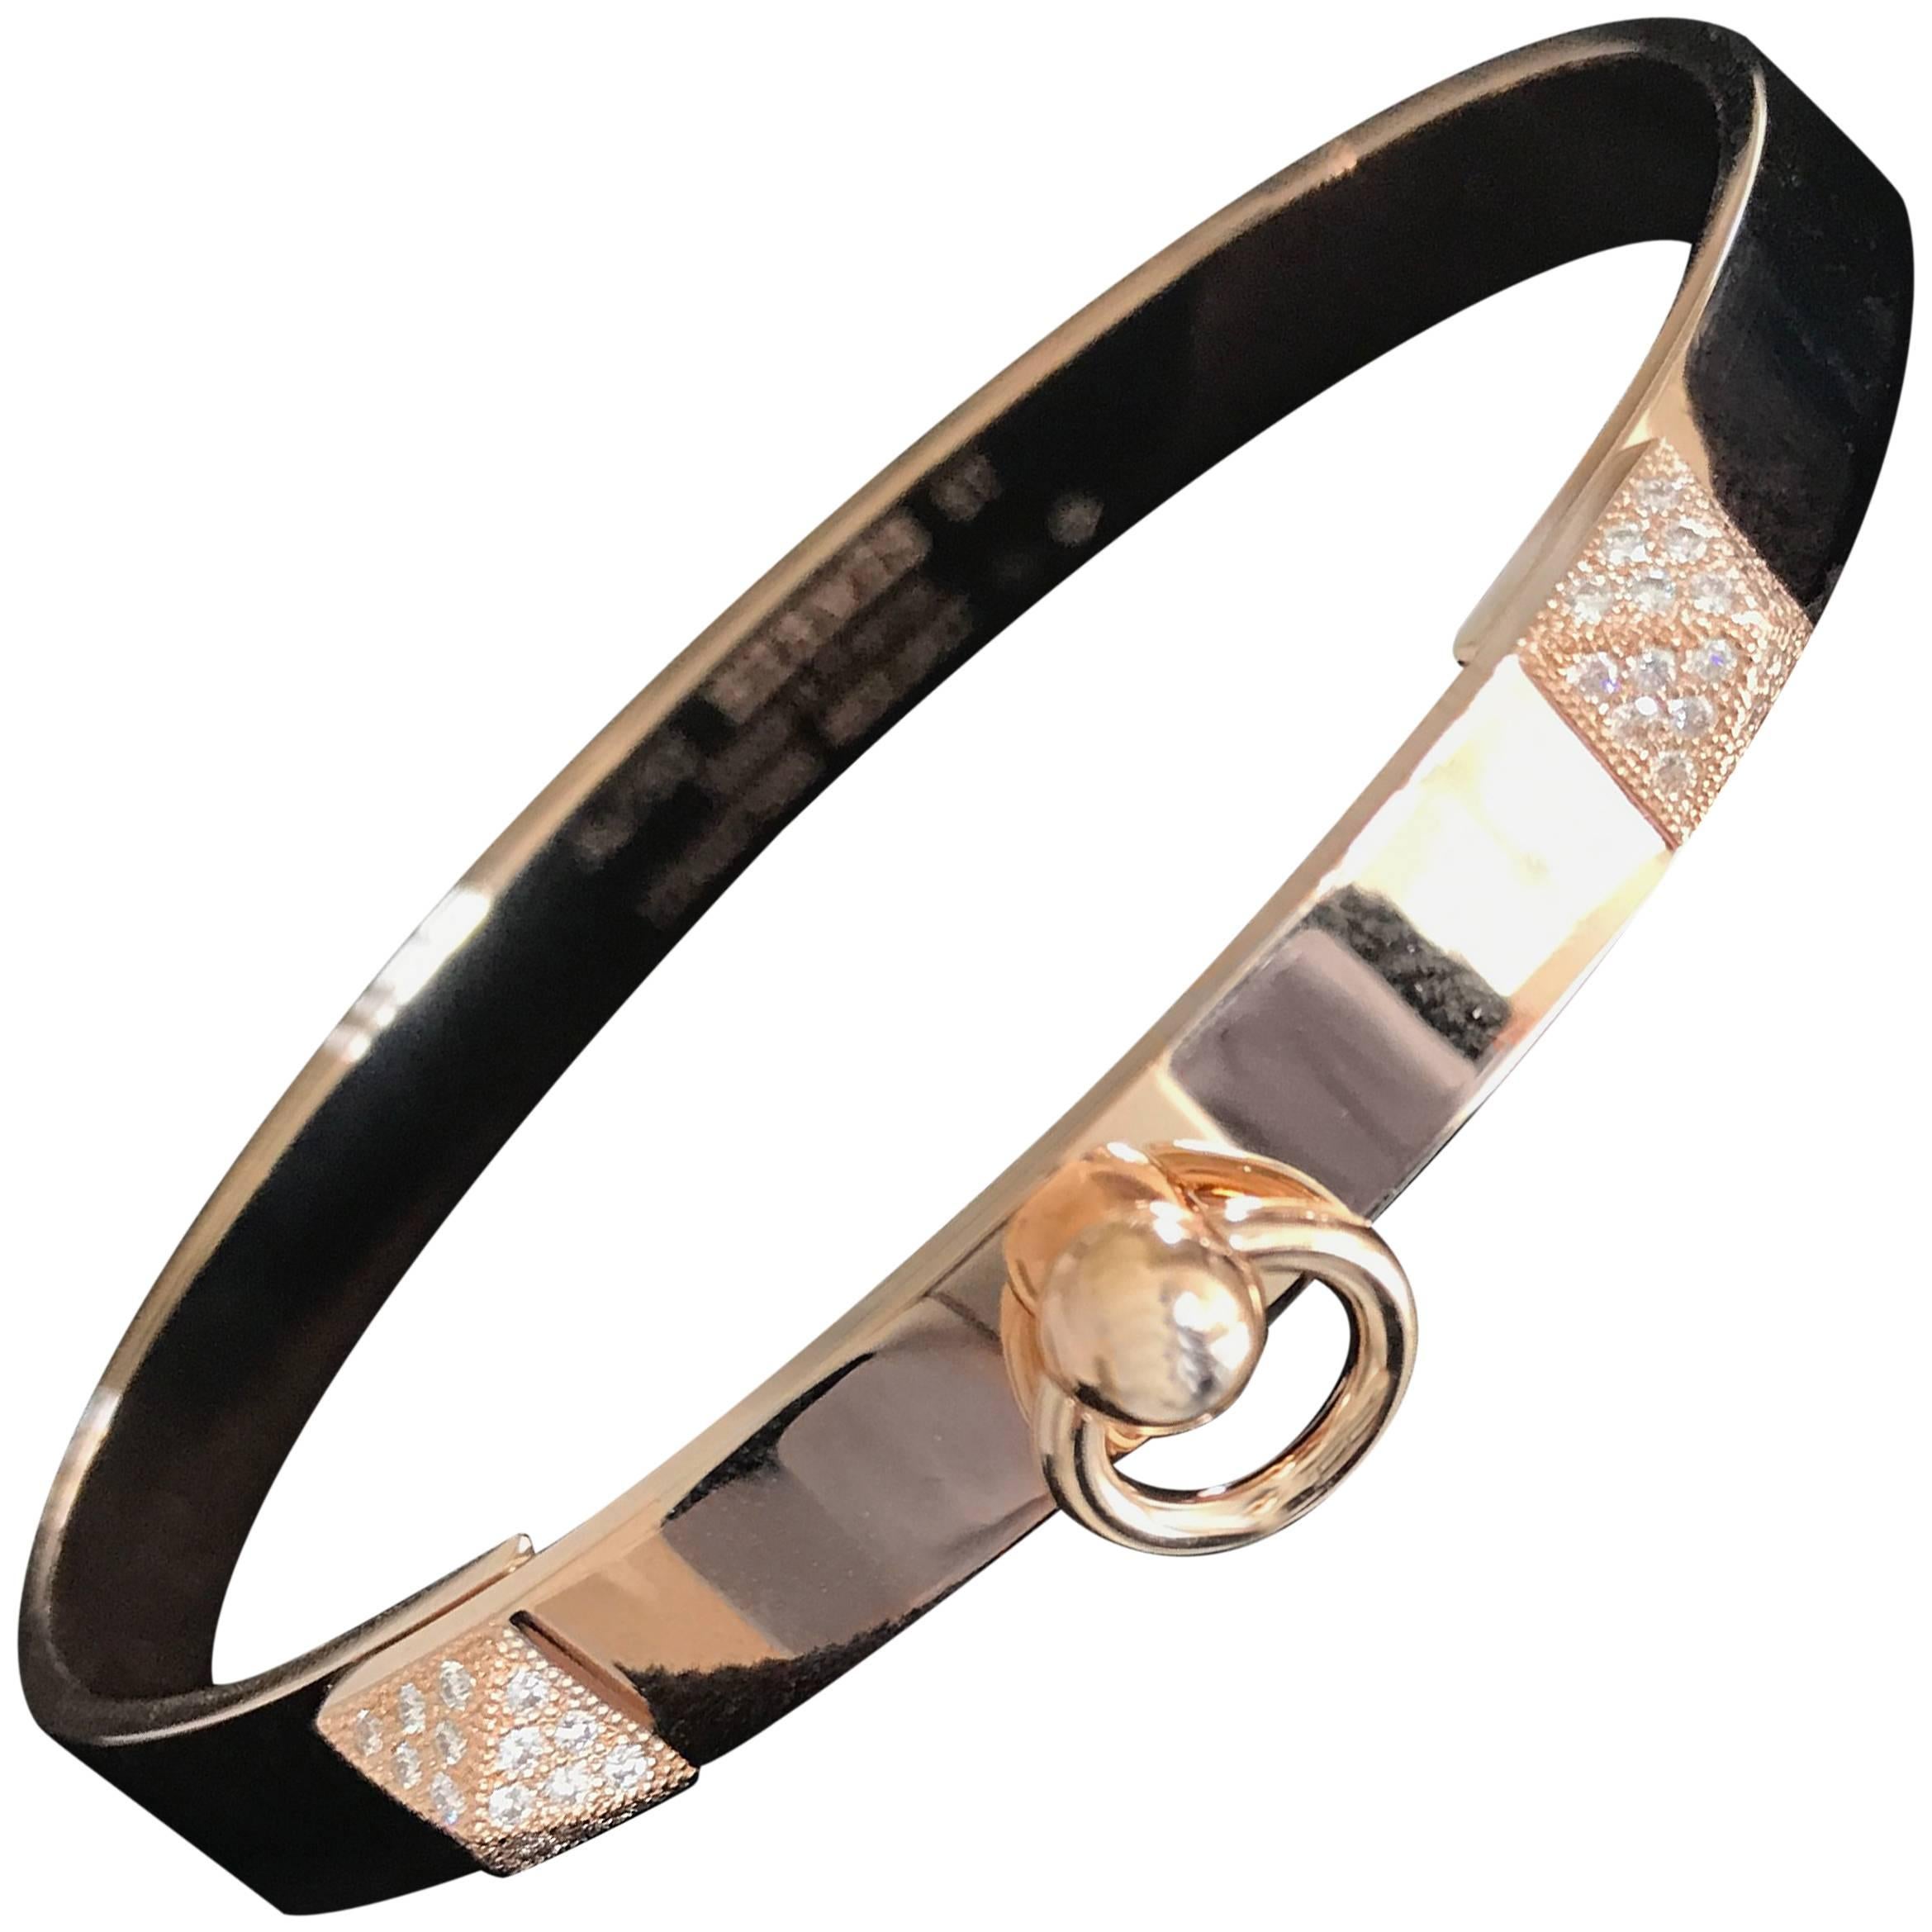 Hermes Collier de Chien CDC Diamond Bangle Bracelet Rose Gold Small Size PM For Sale